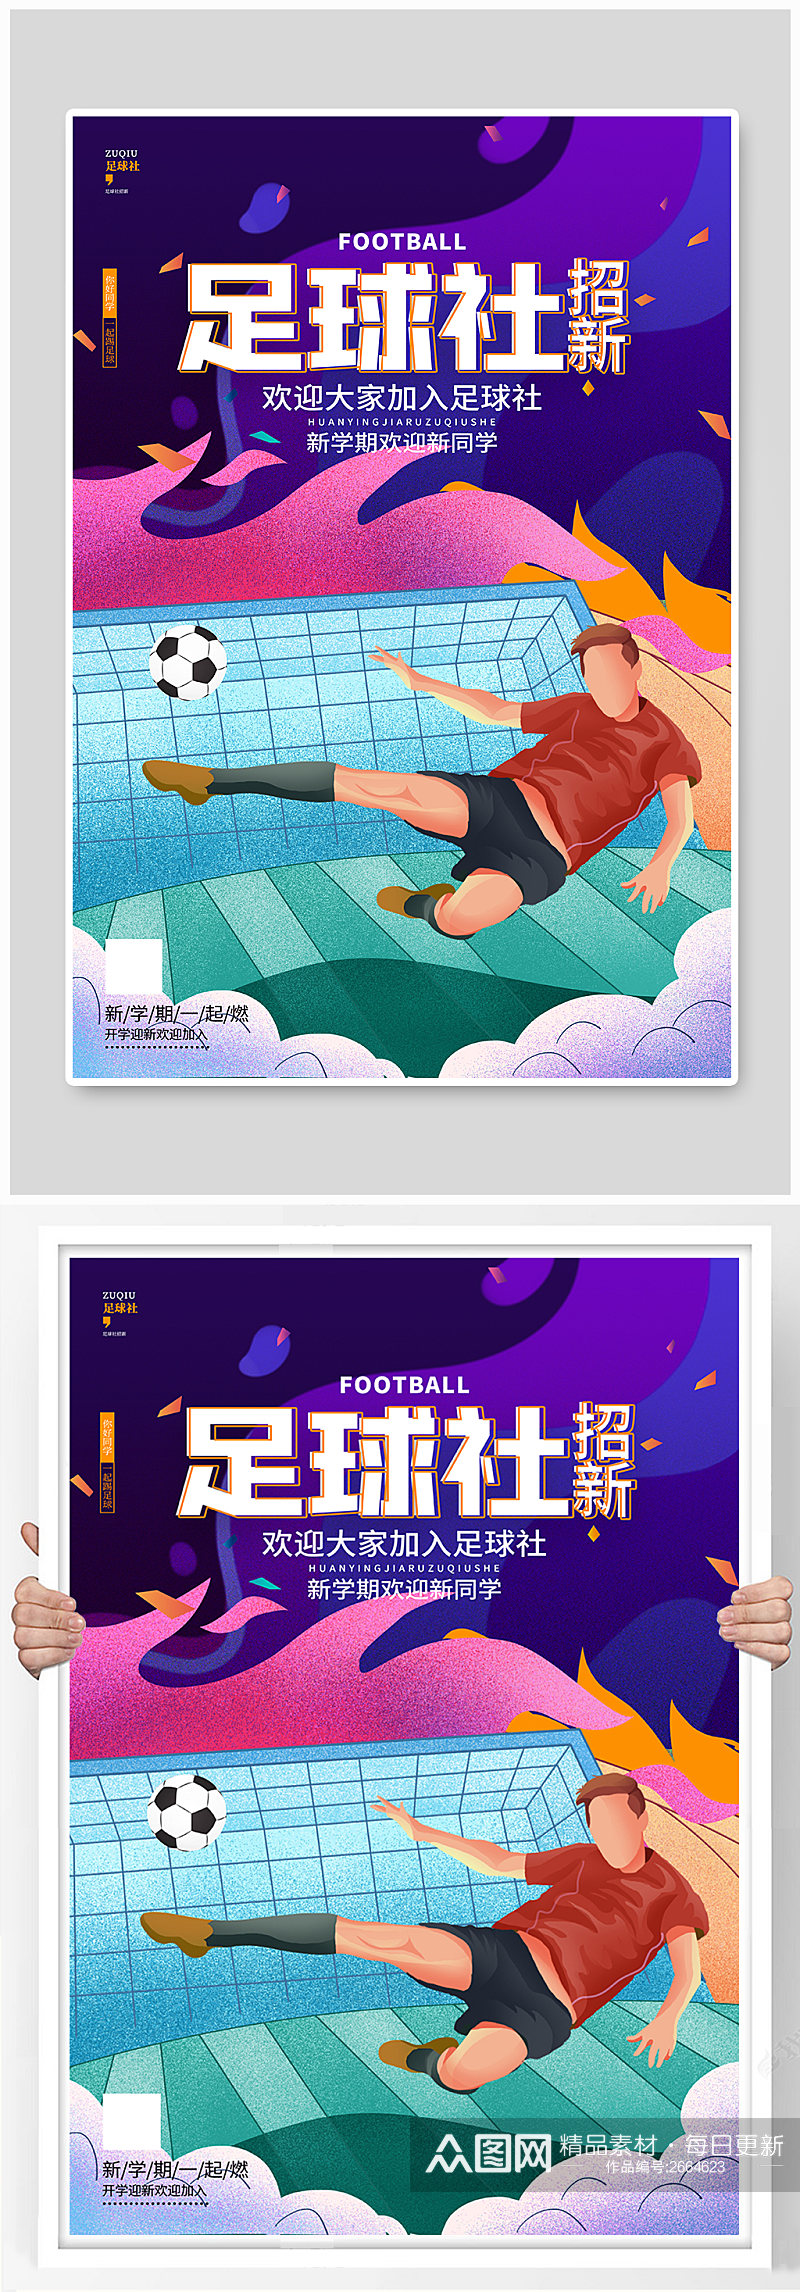 足球社学校招新纳新宣传海报素材